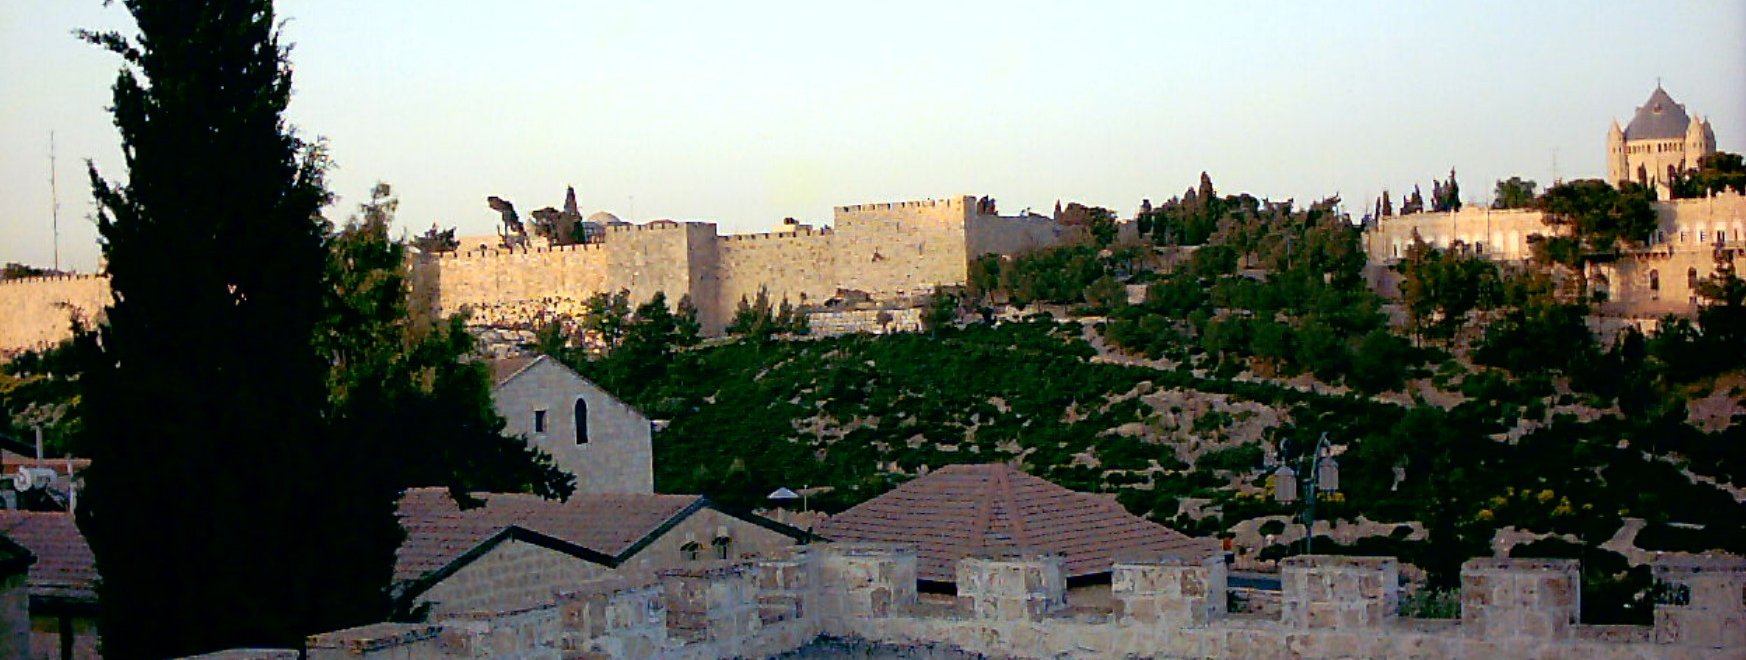 walls-of-jerusalem-old-city-2-21-05-2003.jpg